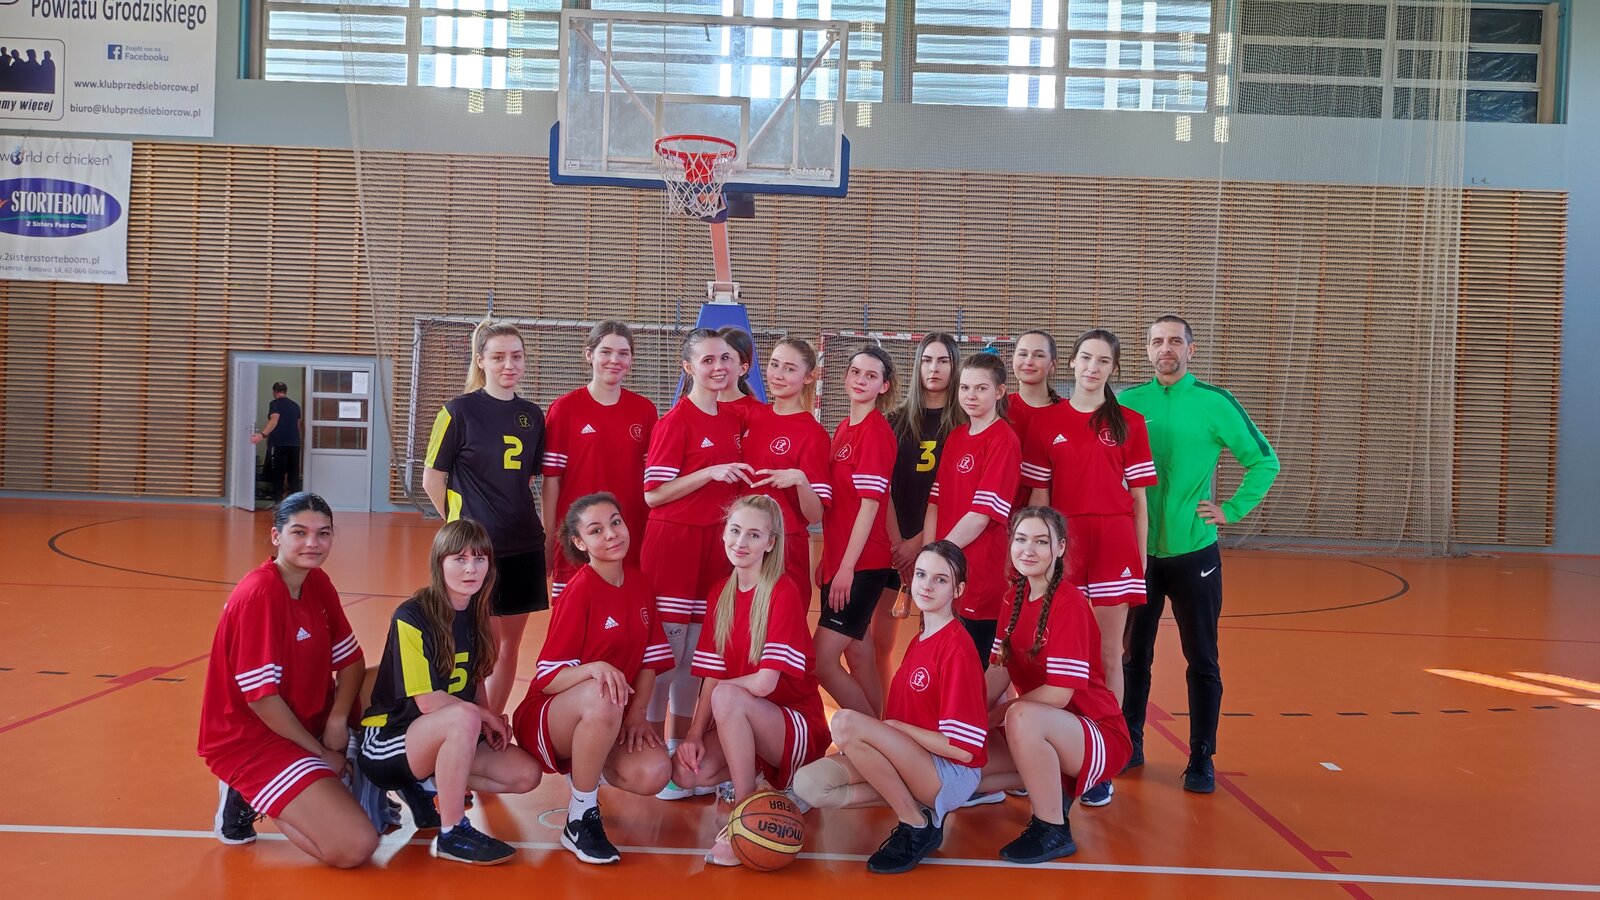 Mistrzostwa Powiatu Grodziskiego w koszykówce dziewcząt i chłopców